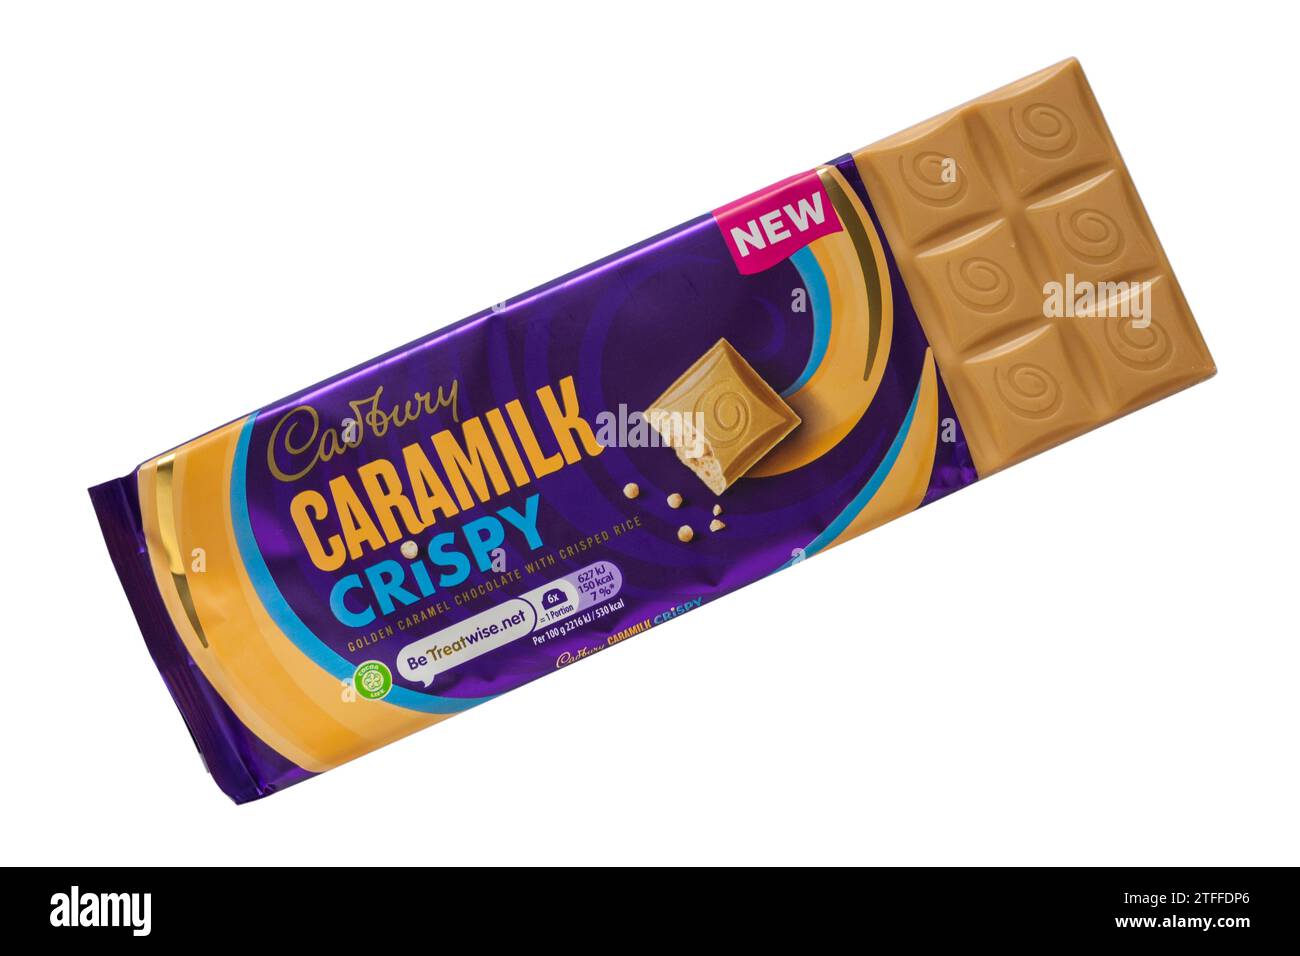 Bar della barretta di cioccolato Cadbury Caramilk Crispy aperto per mostrare contenuti isolati su sfondo bianco Foto Stock